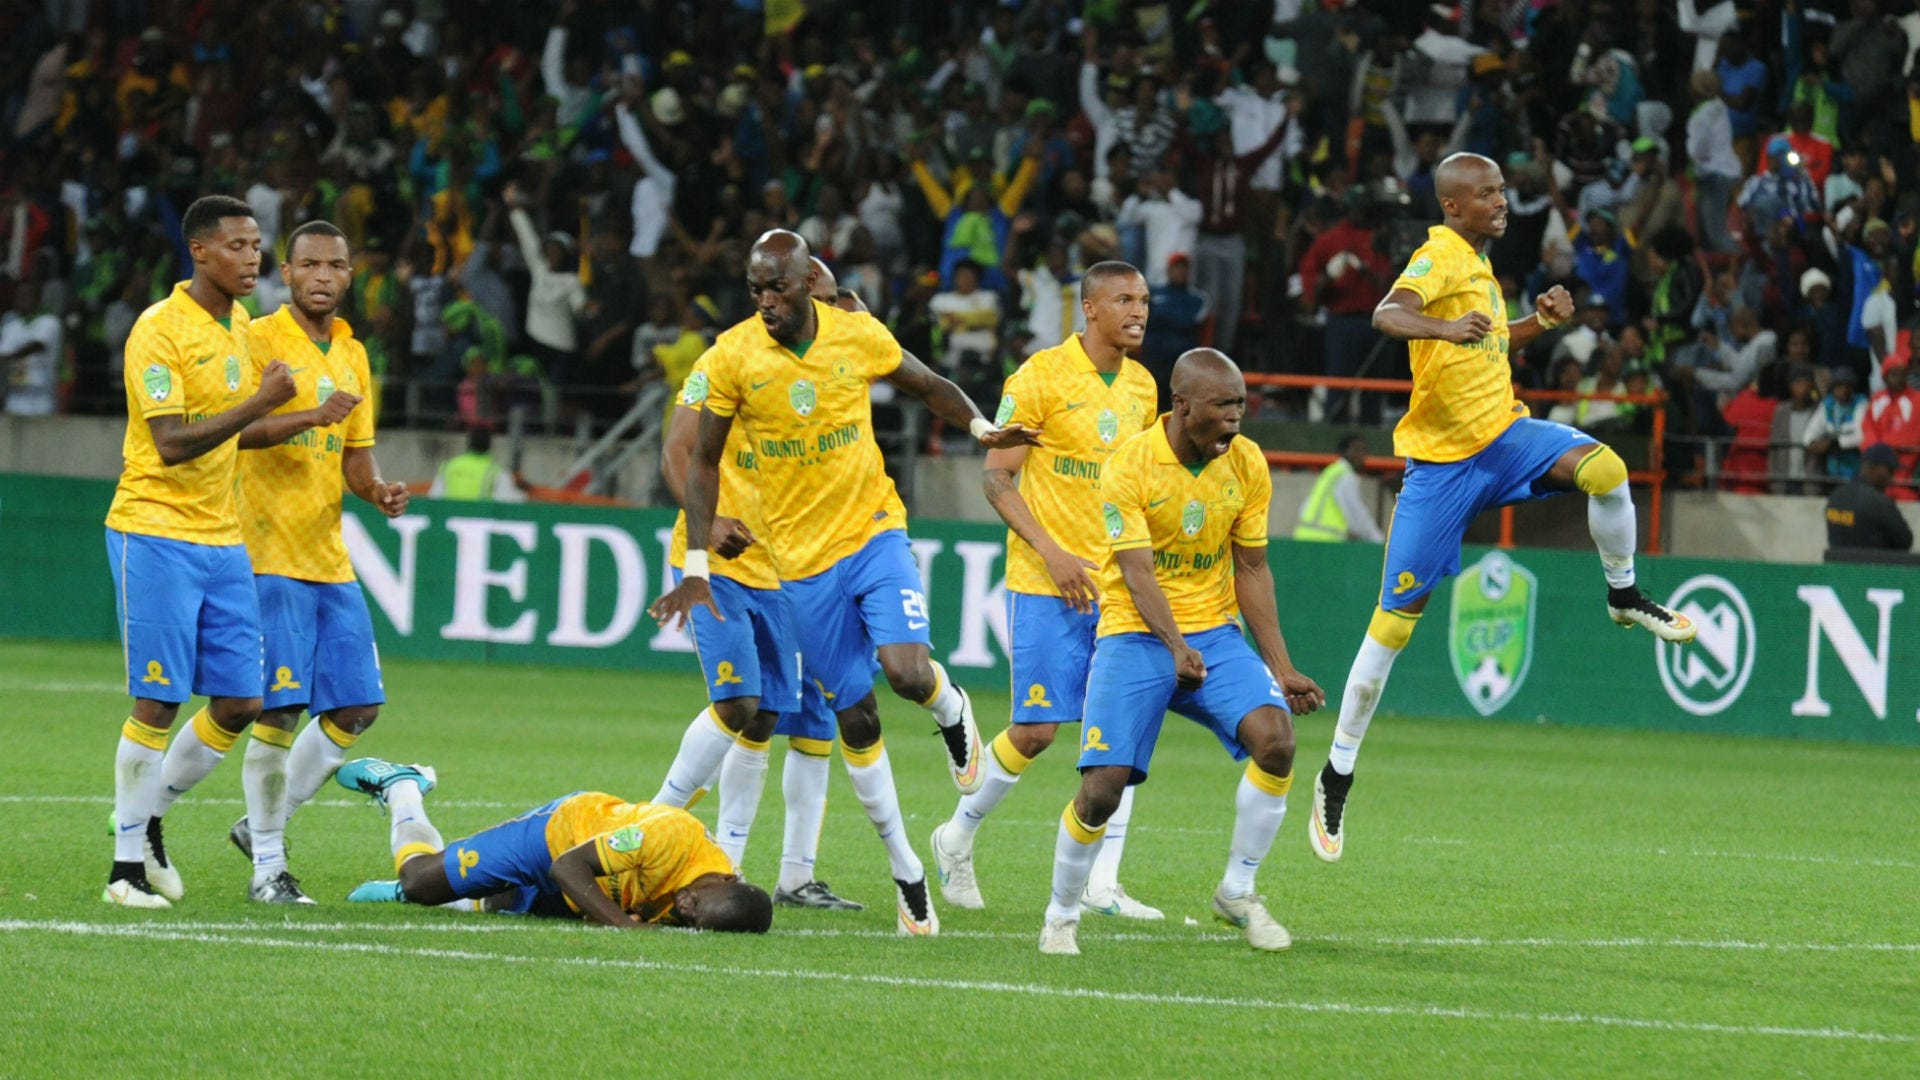 Mamelodi Sundowns celebrate winning Nedbank Cup 2015